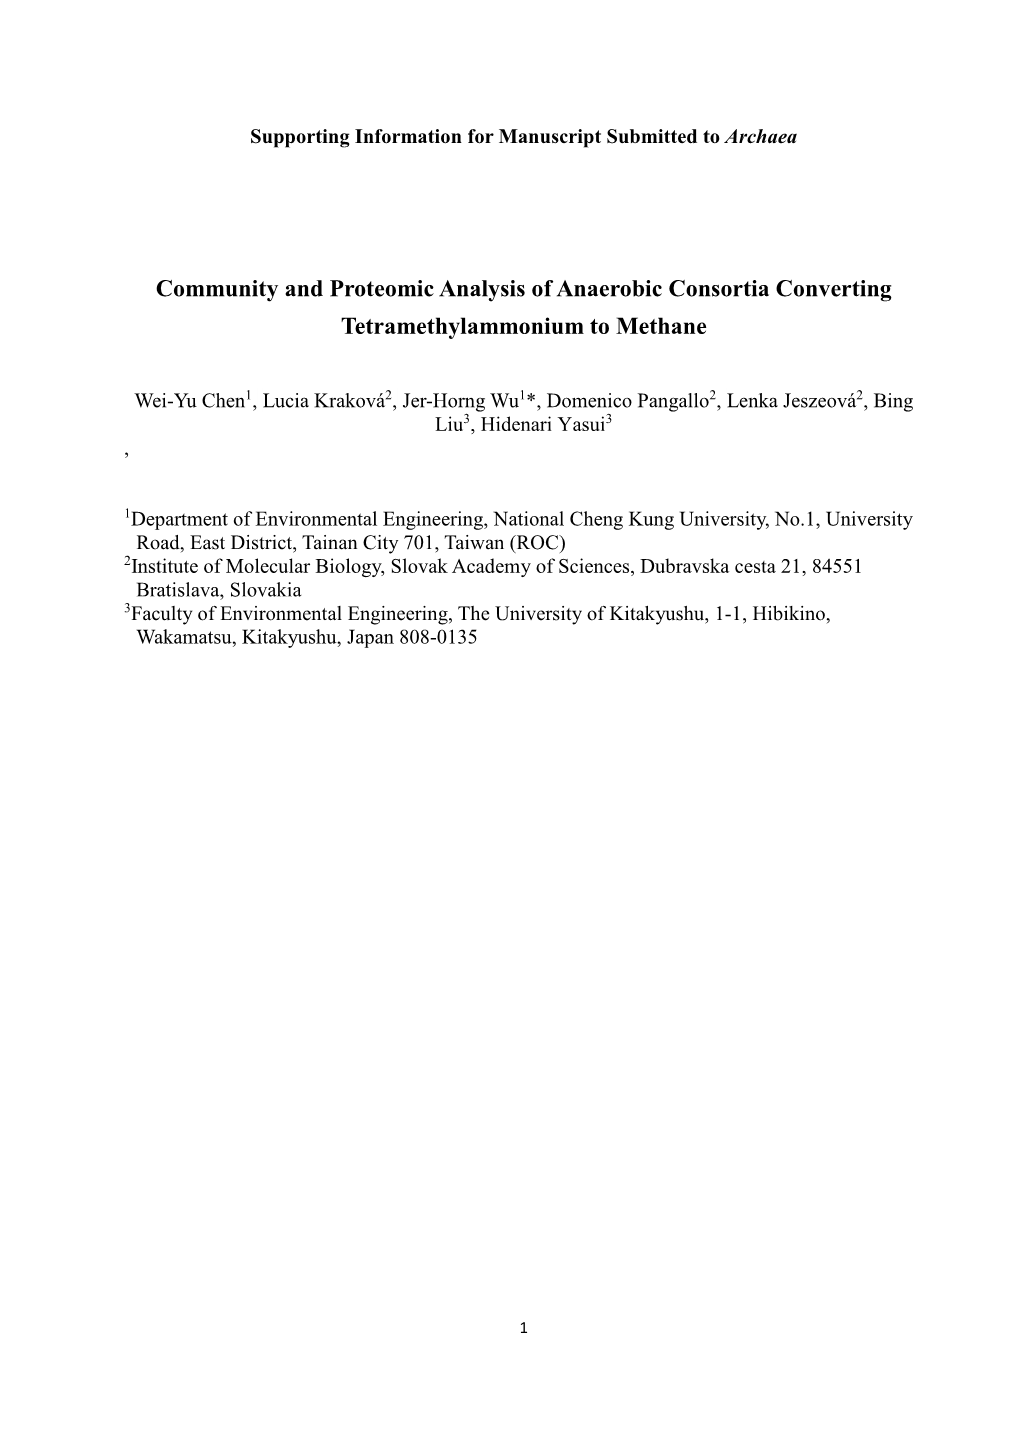 Community and Proteomic Analysis of Anaerobic Consortia Converting Tetramethylammonium to Methane